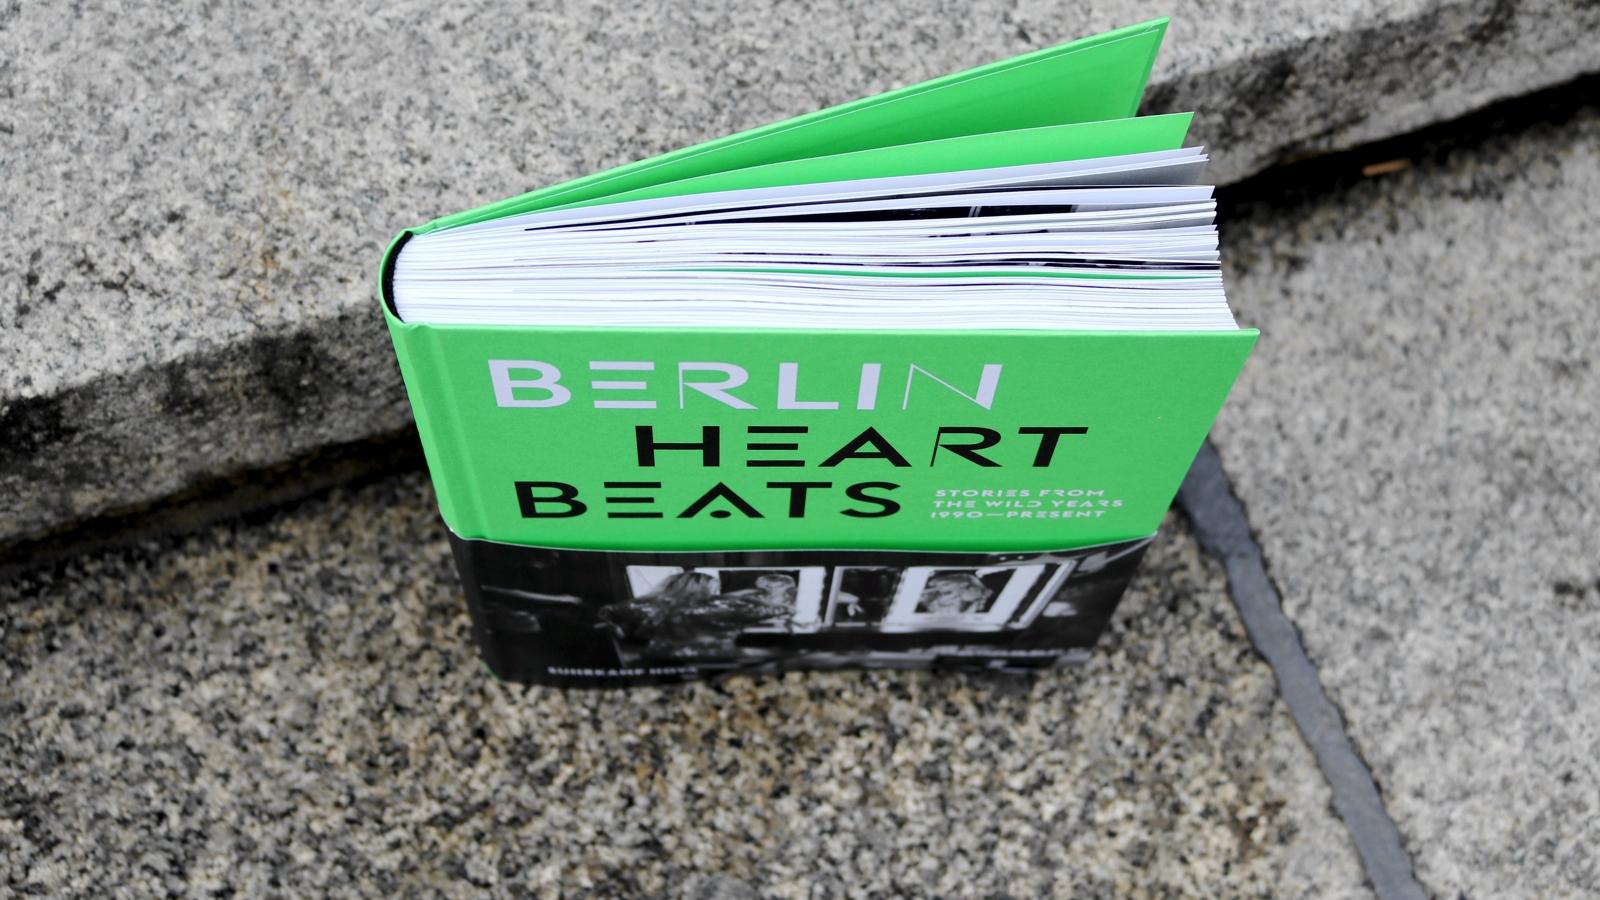 Berlin Heartbeats lede